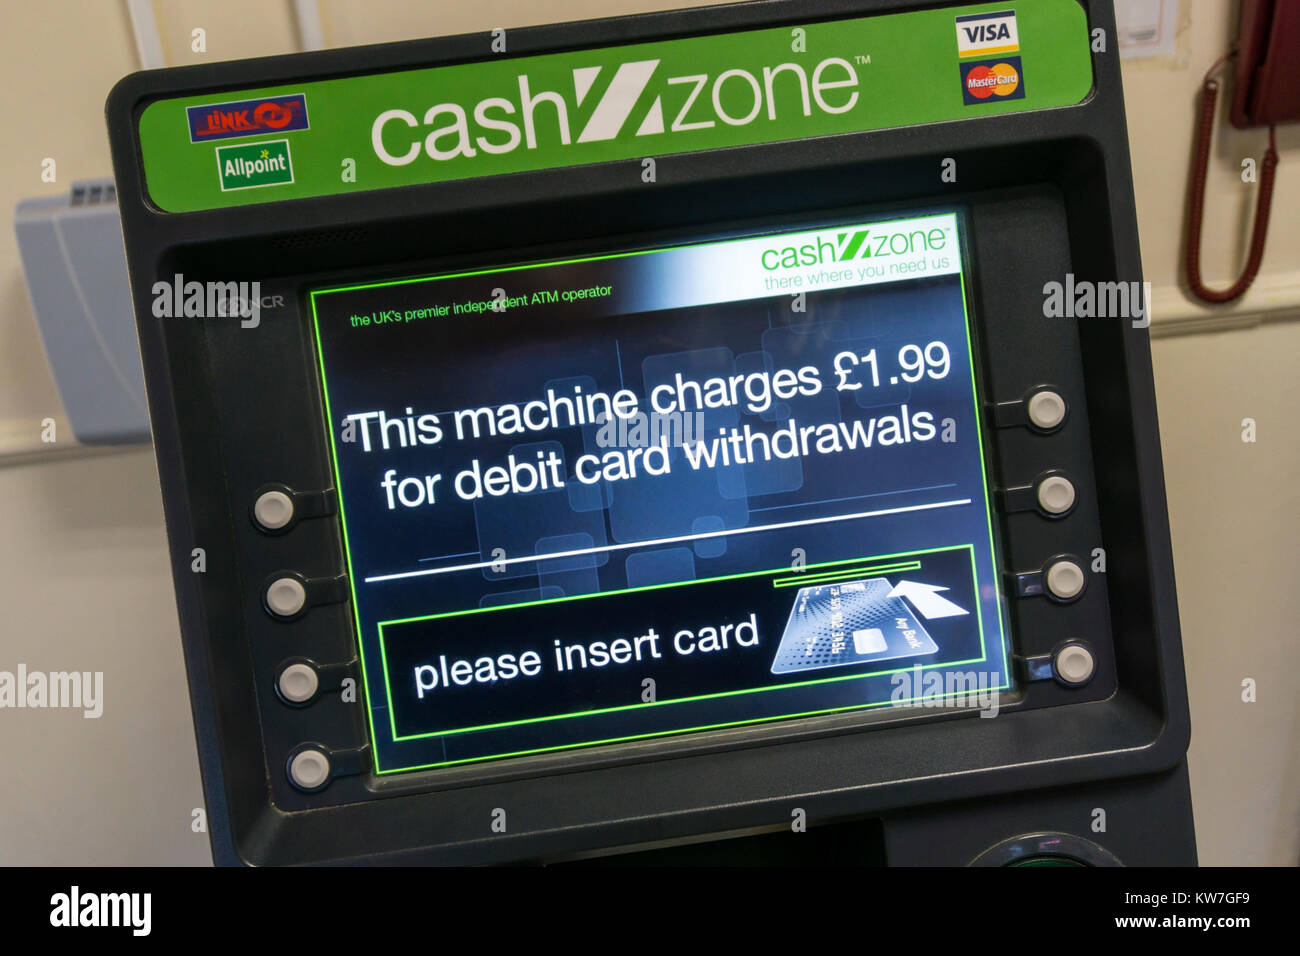 Un CashZone ATM in una stazione di servizio autostradale avverte che vi è una £1.99 carica per i prelievi di contante con carta di debito. Foto Stock